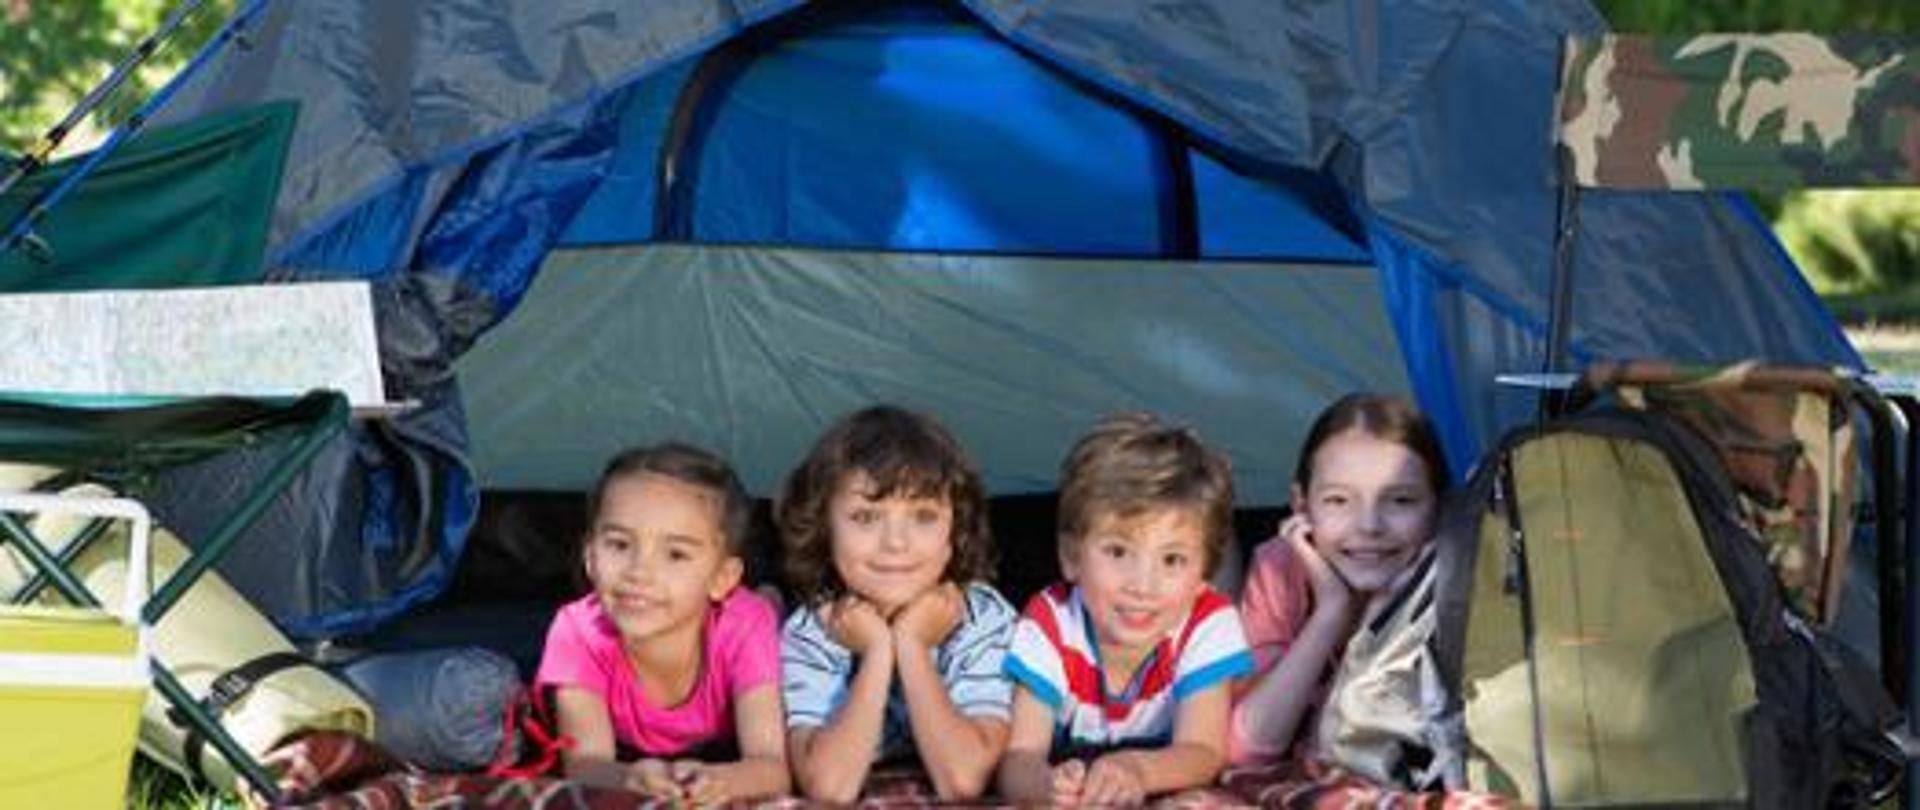 Przedstawiono czwórkę dzieci, które leżą pod namiotem 